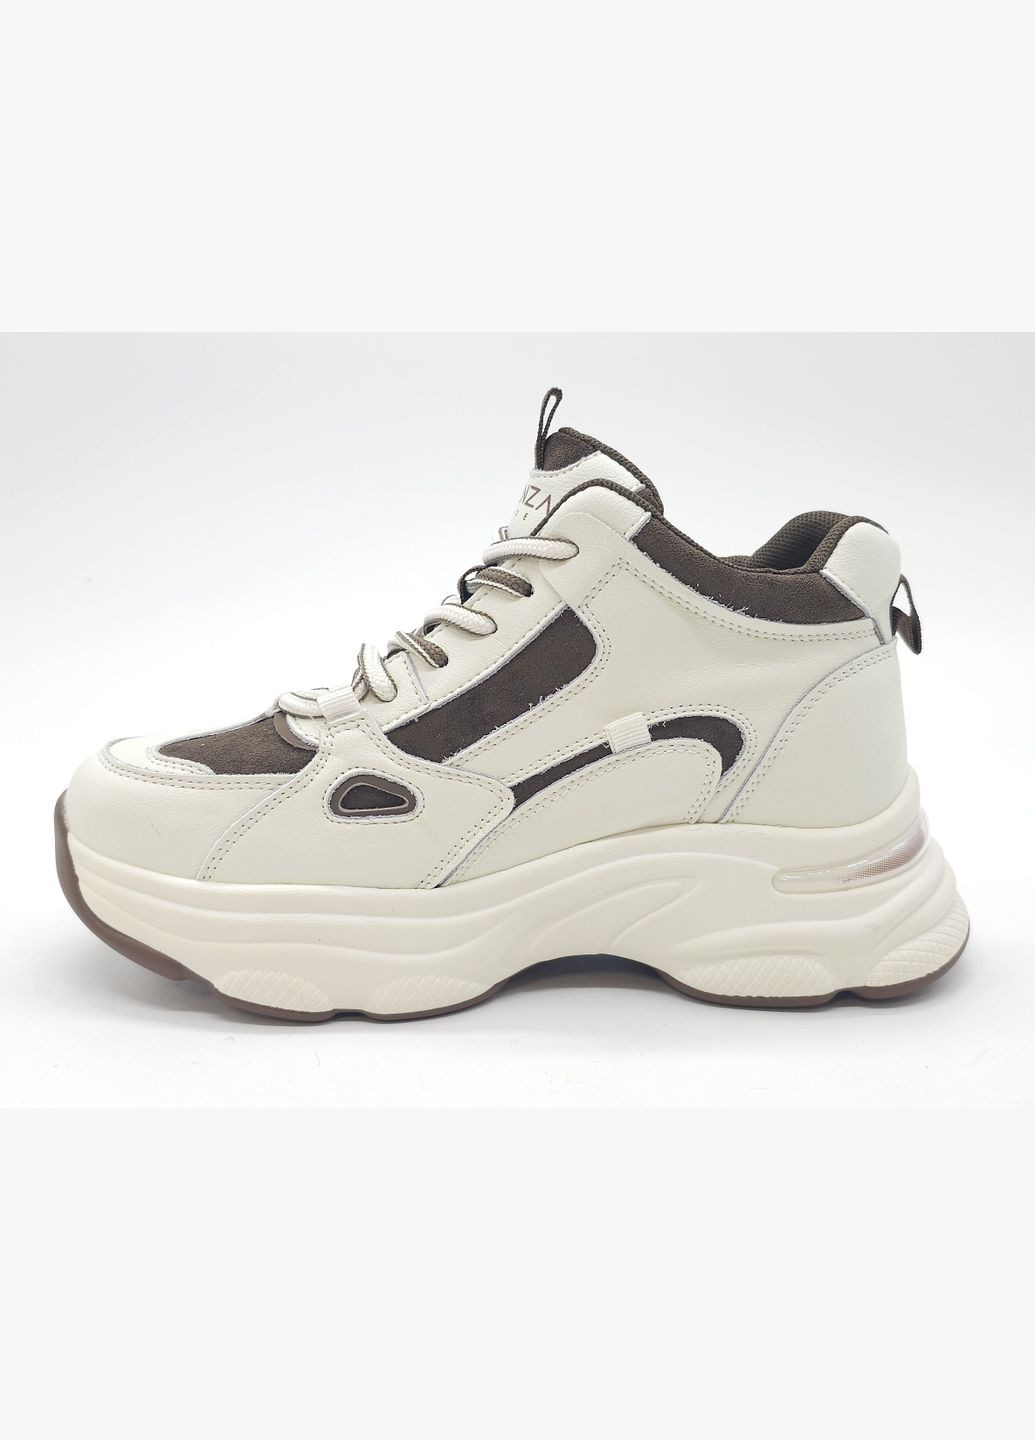 Білі всесезонні жіночі кросівки білі шкіряні l-11-47 24,5 см (р) Lonza